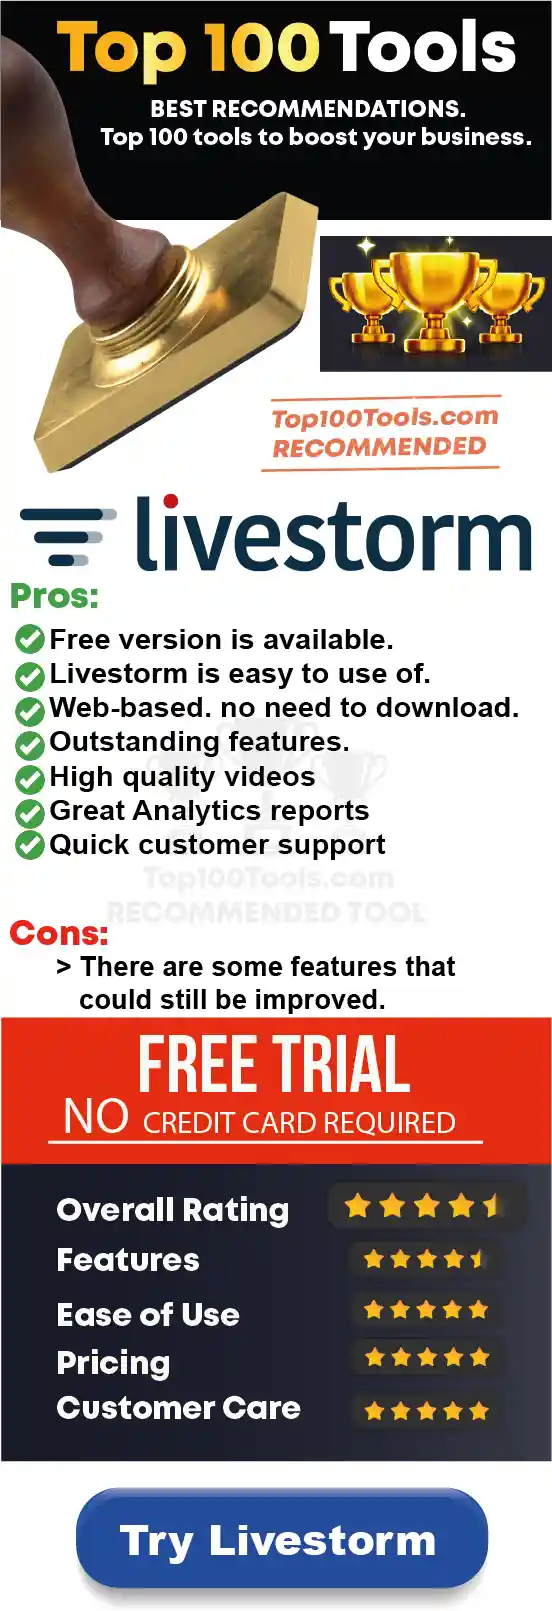 Livestorm free trial